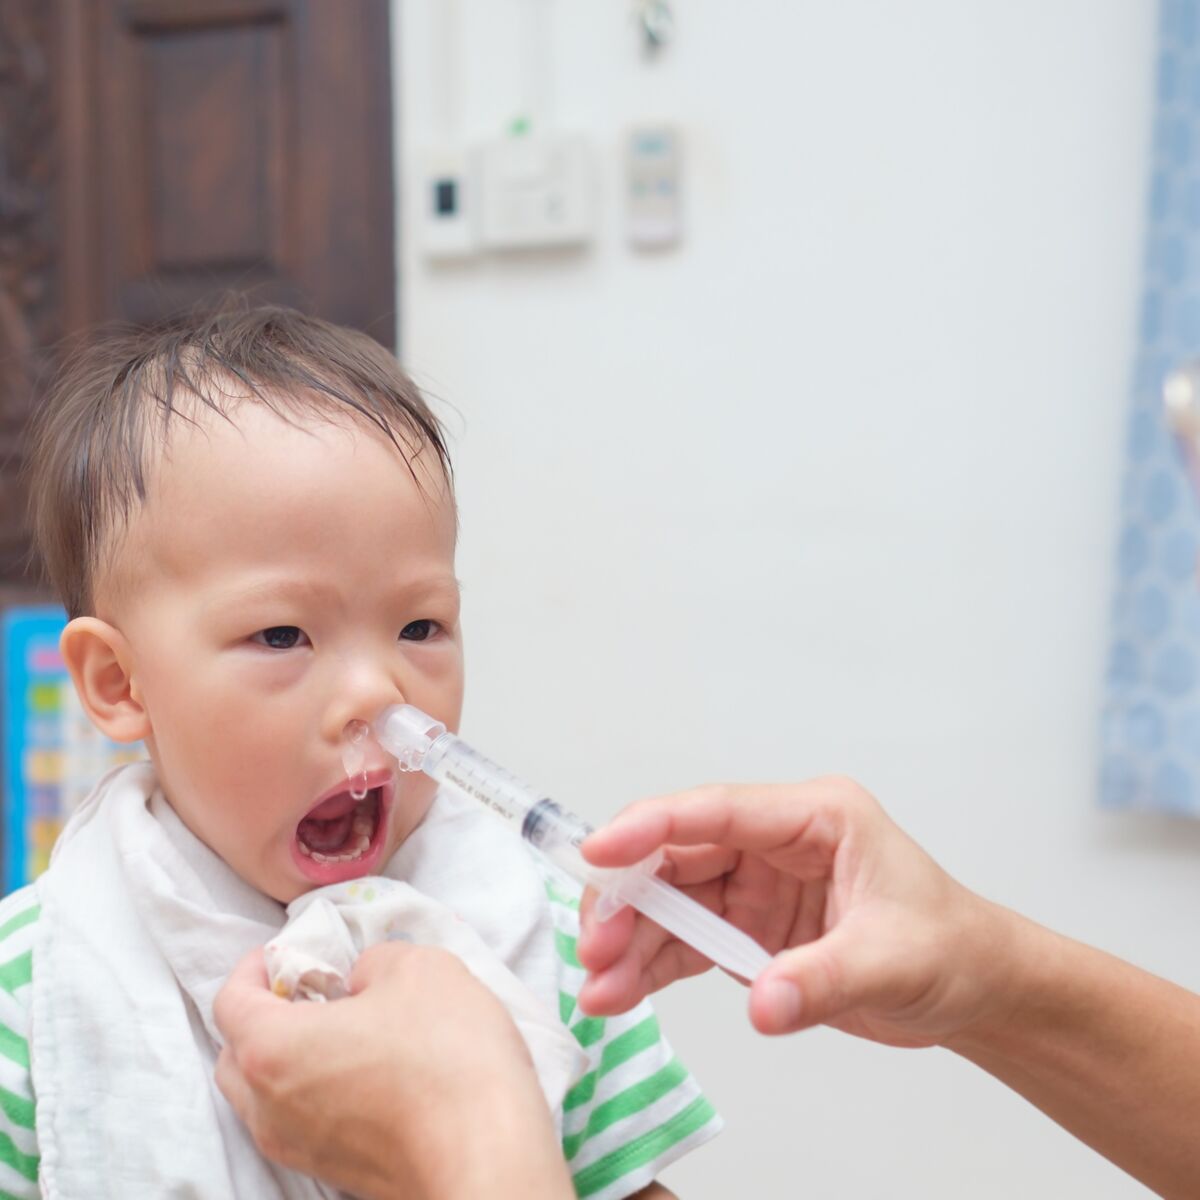 Moucher bébé avec une seringue nasale : pourquoi et comment le